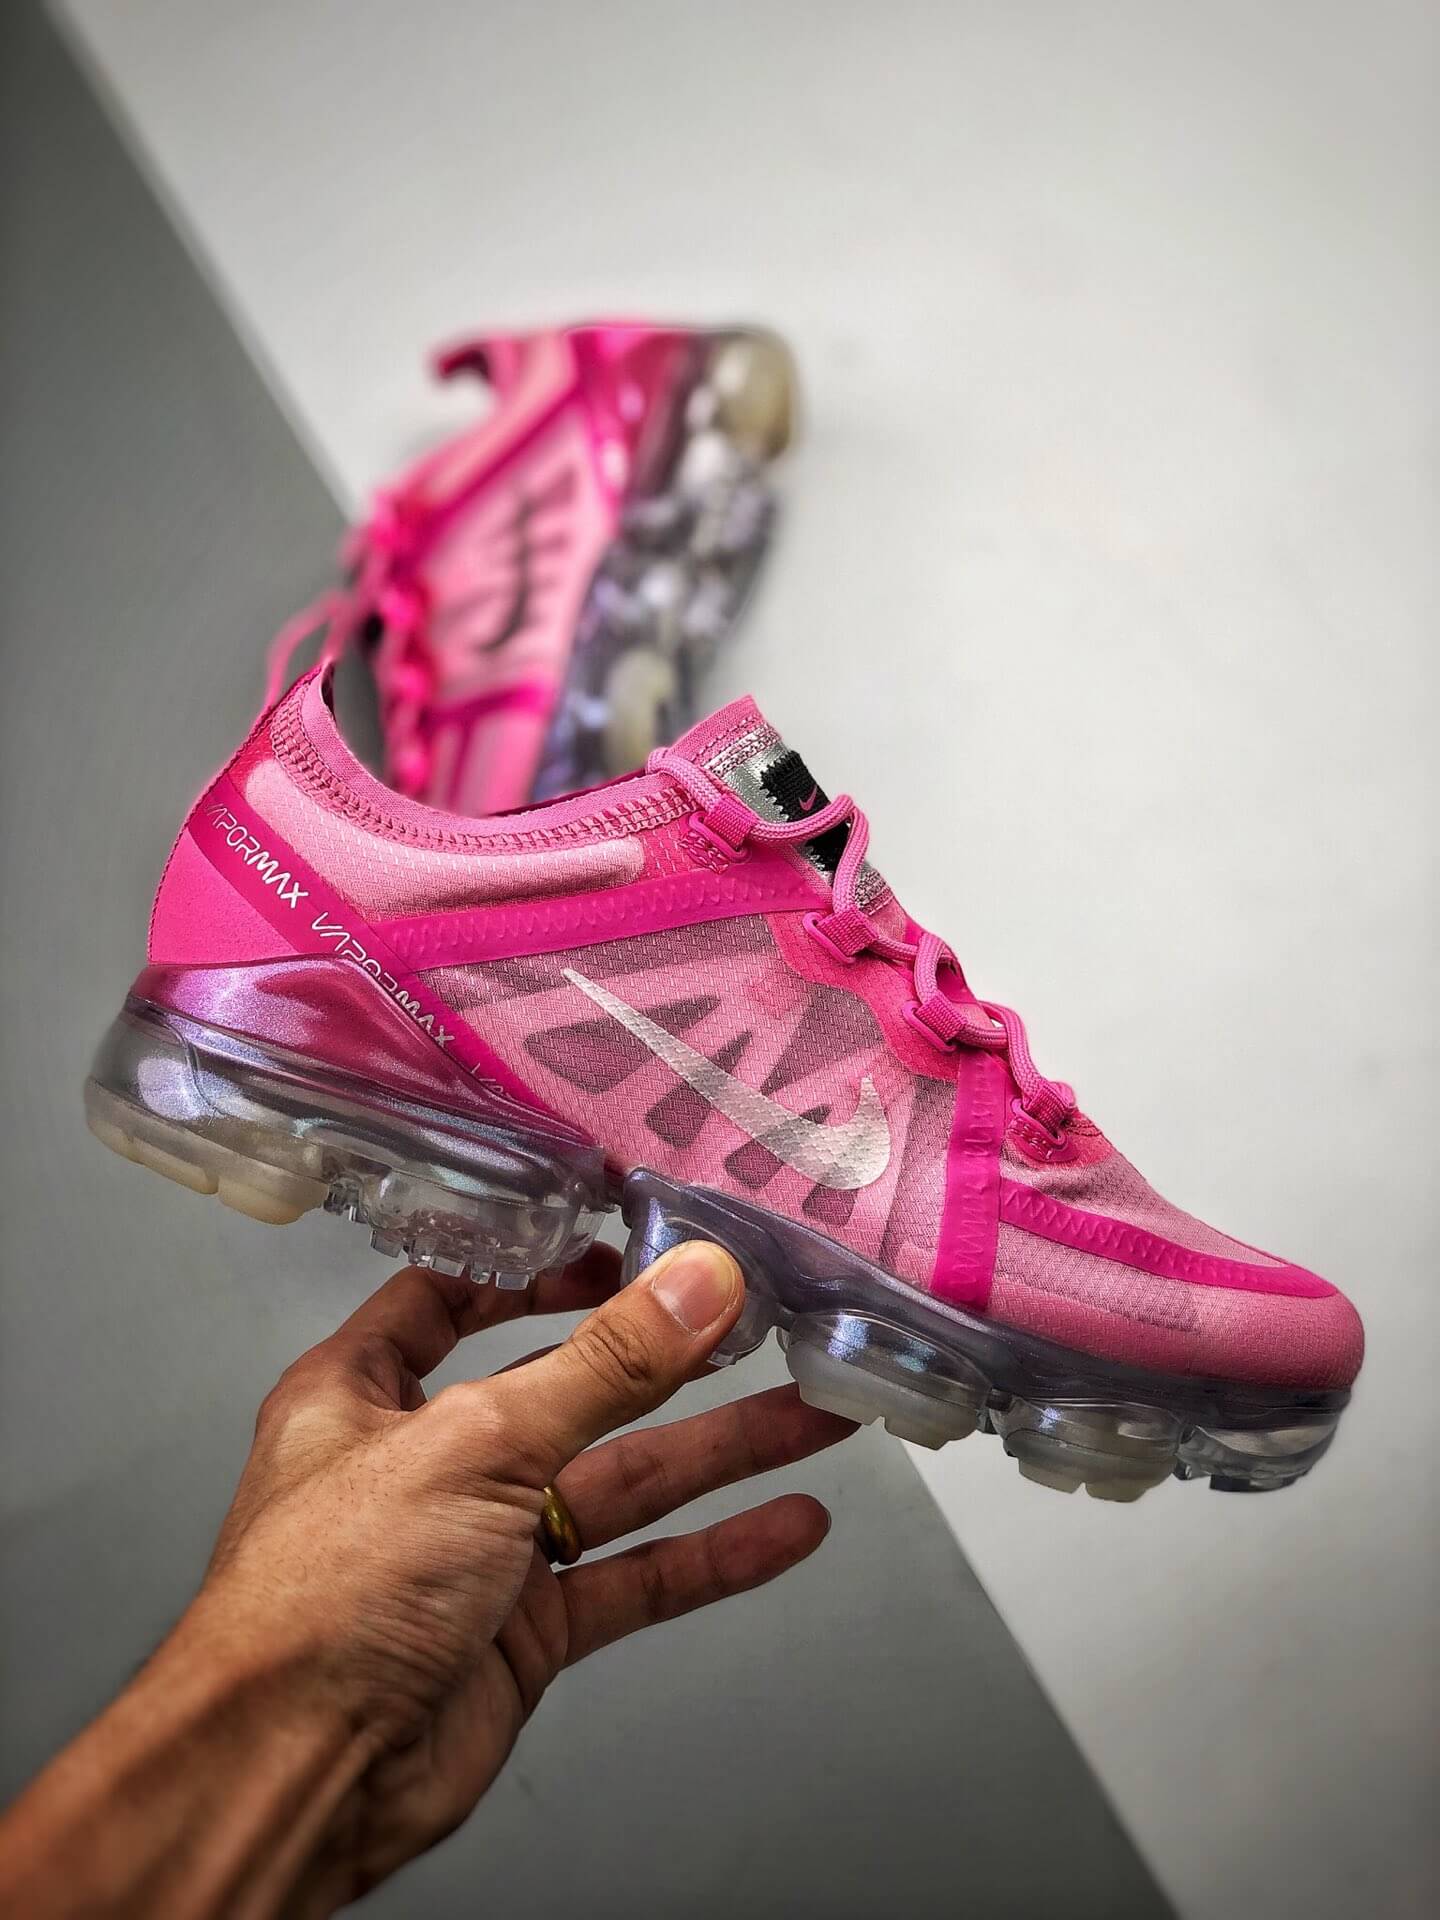 nike air vapormax 2019 psychic pink women's shoe